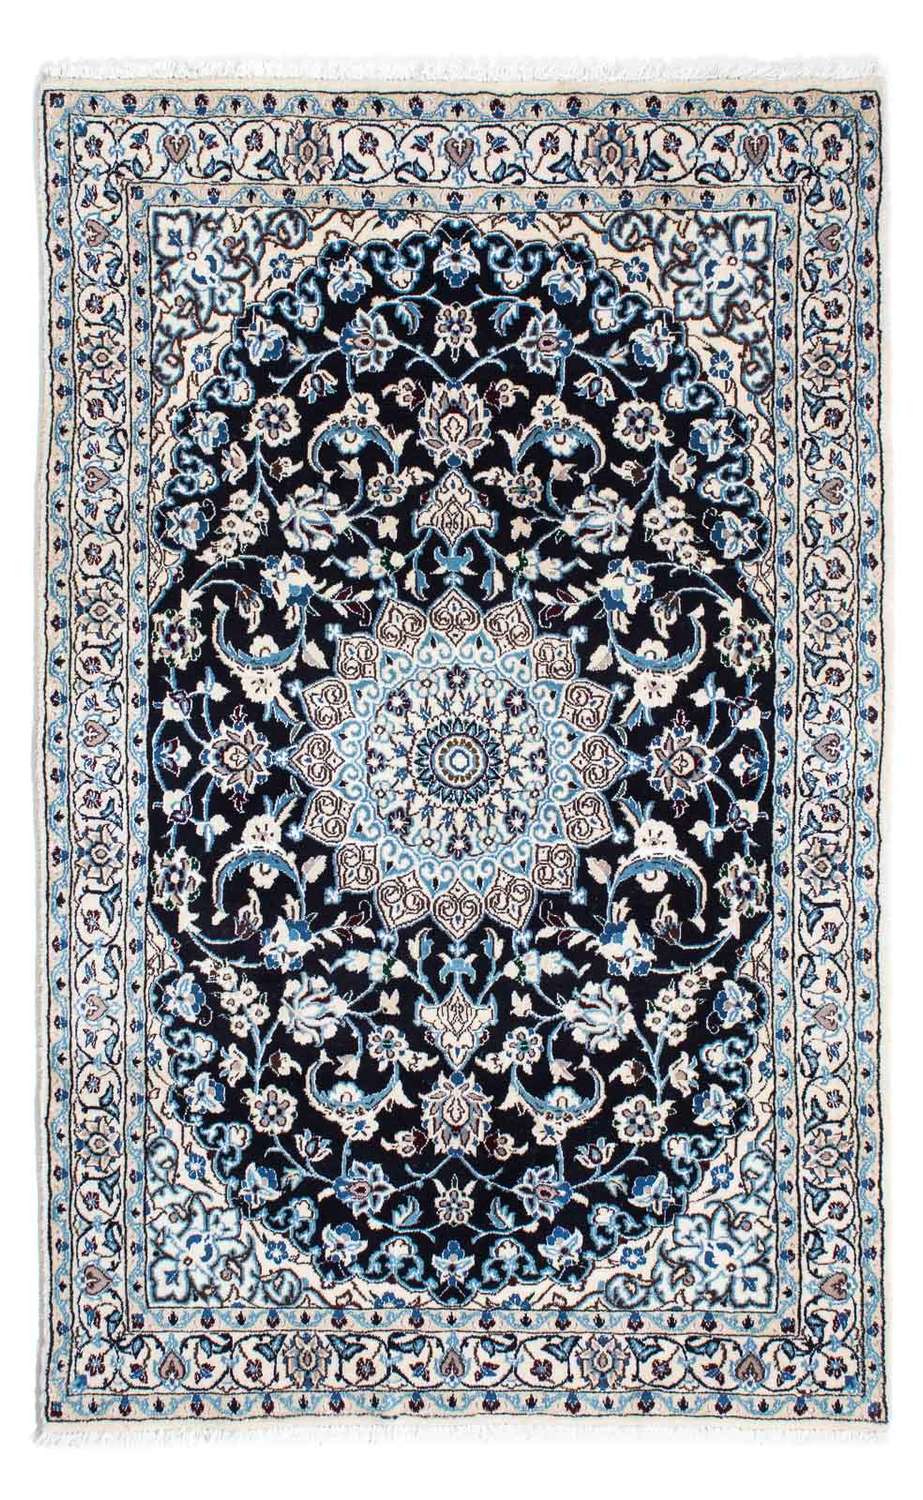 Dywan perski - Nain - Królewski - 175 x 108 cm - ciemnoniebieski